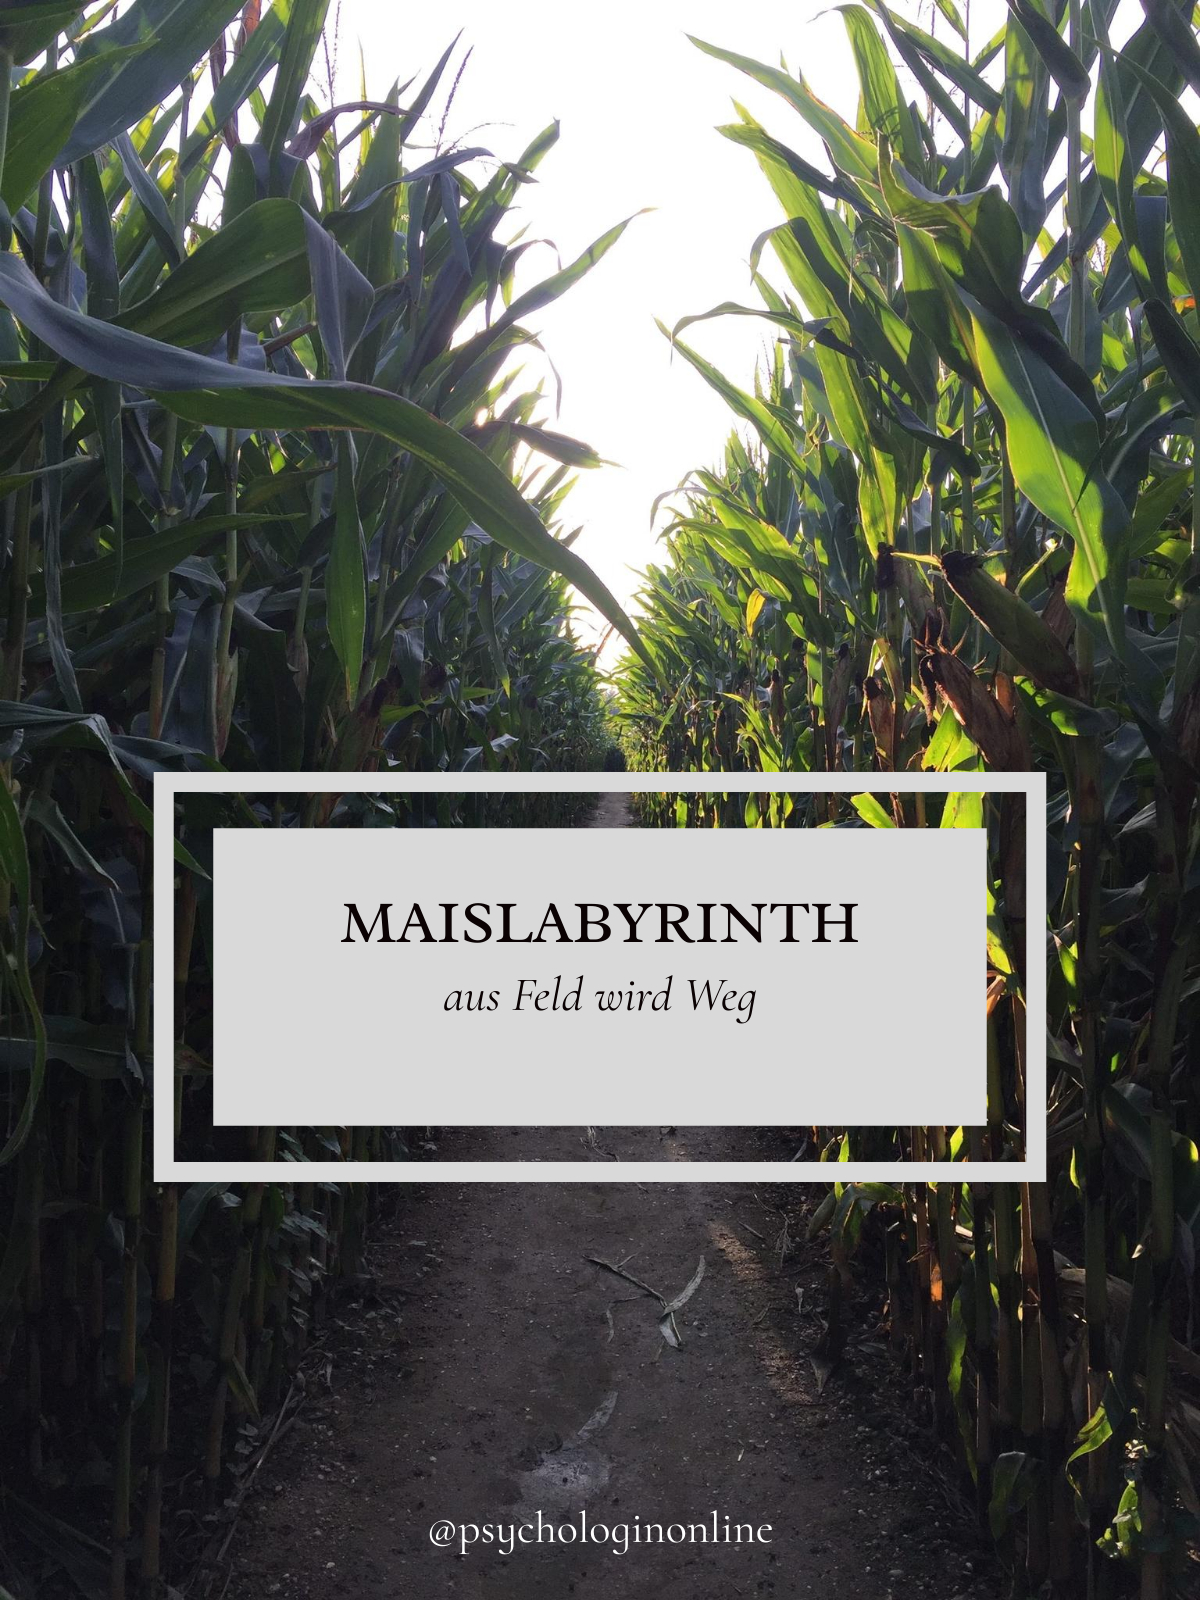 Maislabyrinth: Aus Feld wird Weg